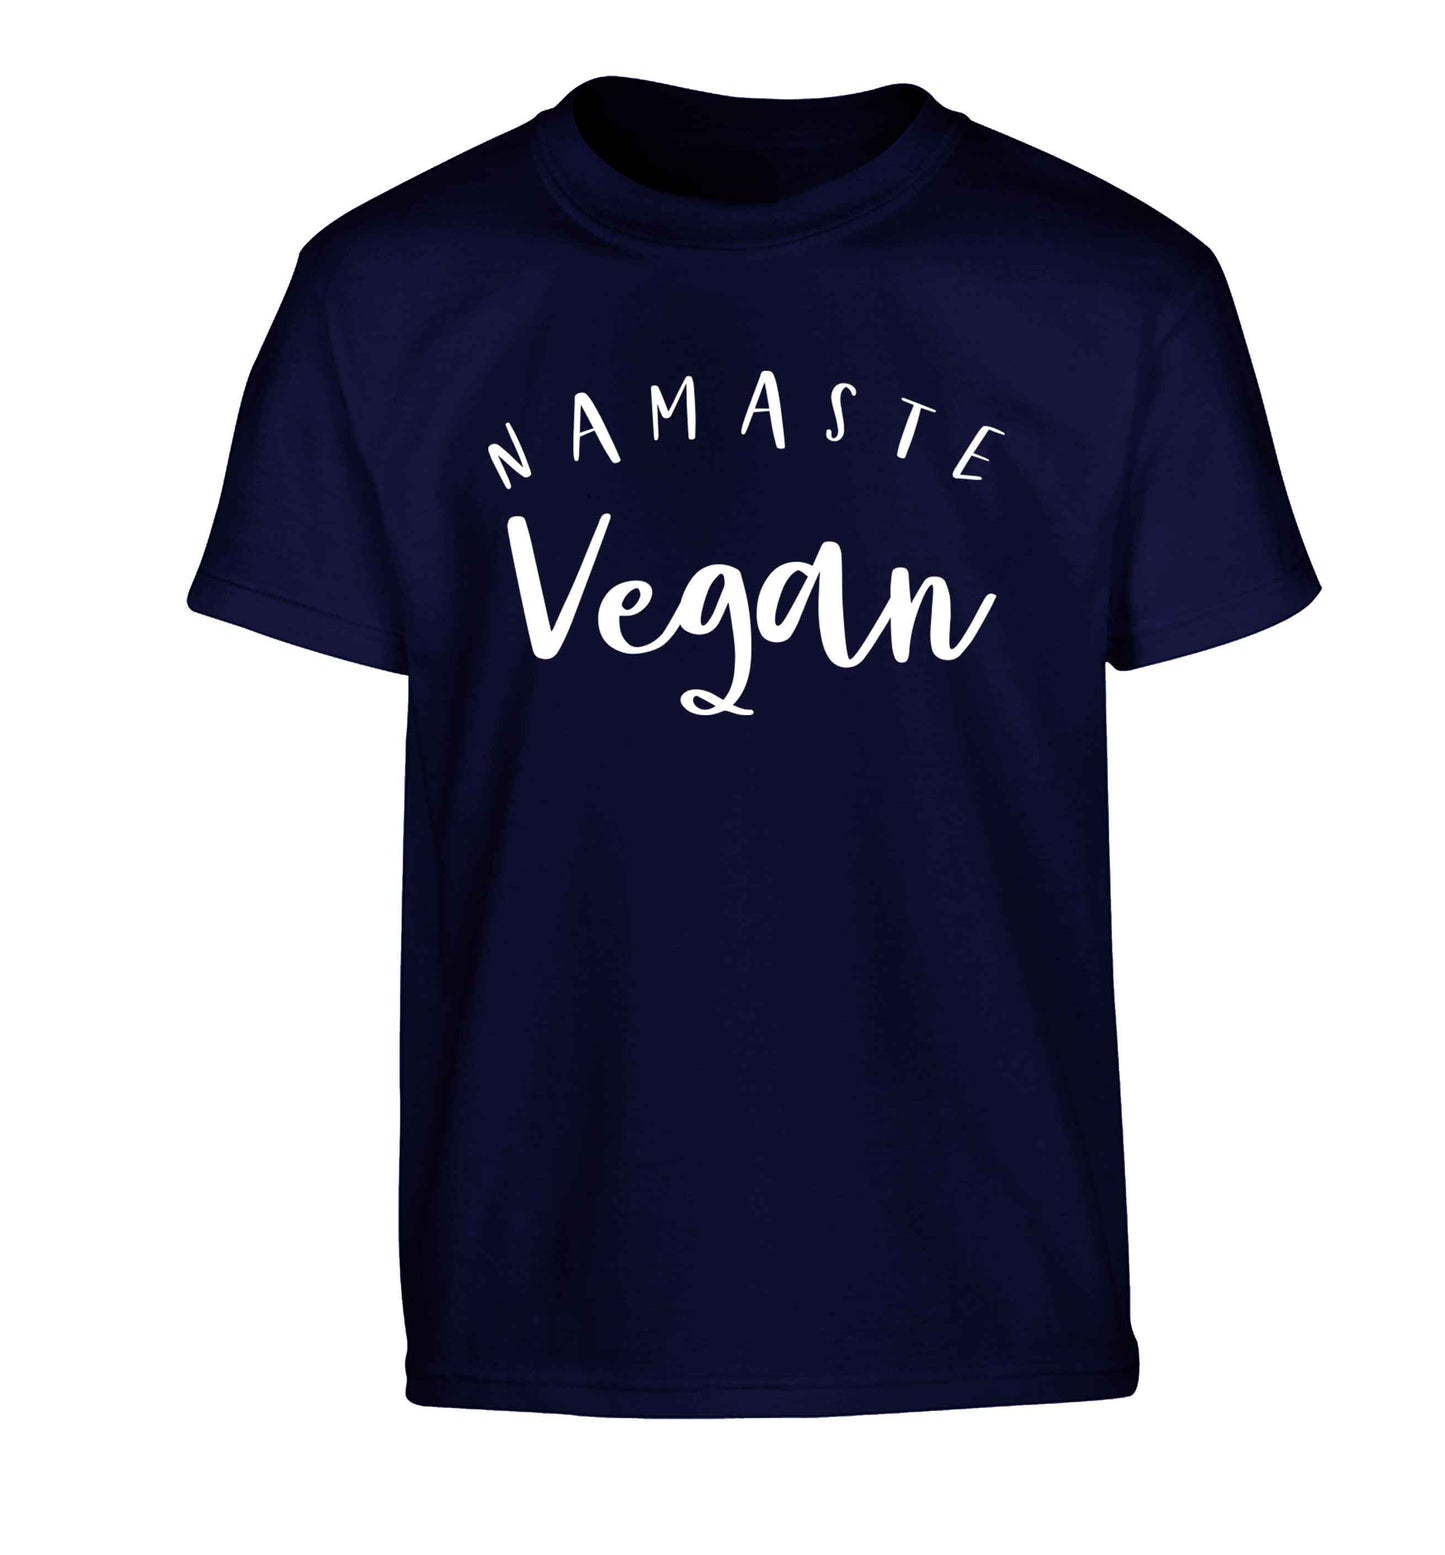 Namaste vegan Children's navy Tshirt 12-13 Years